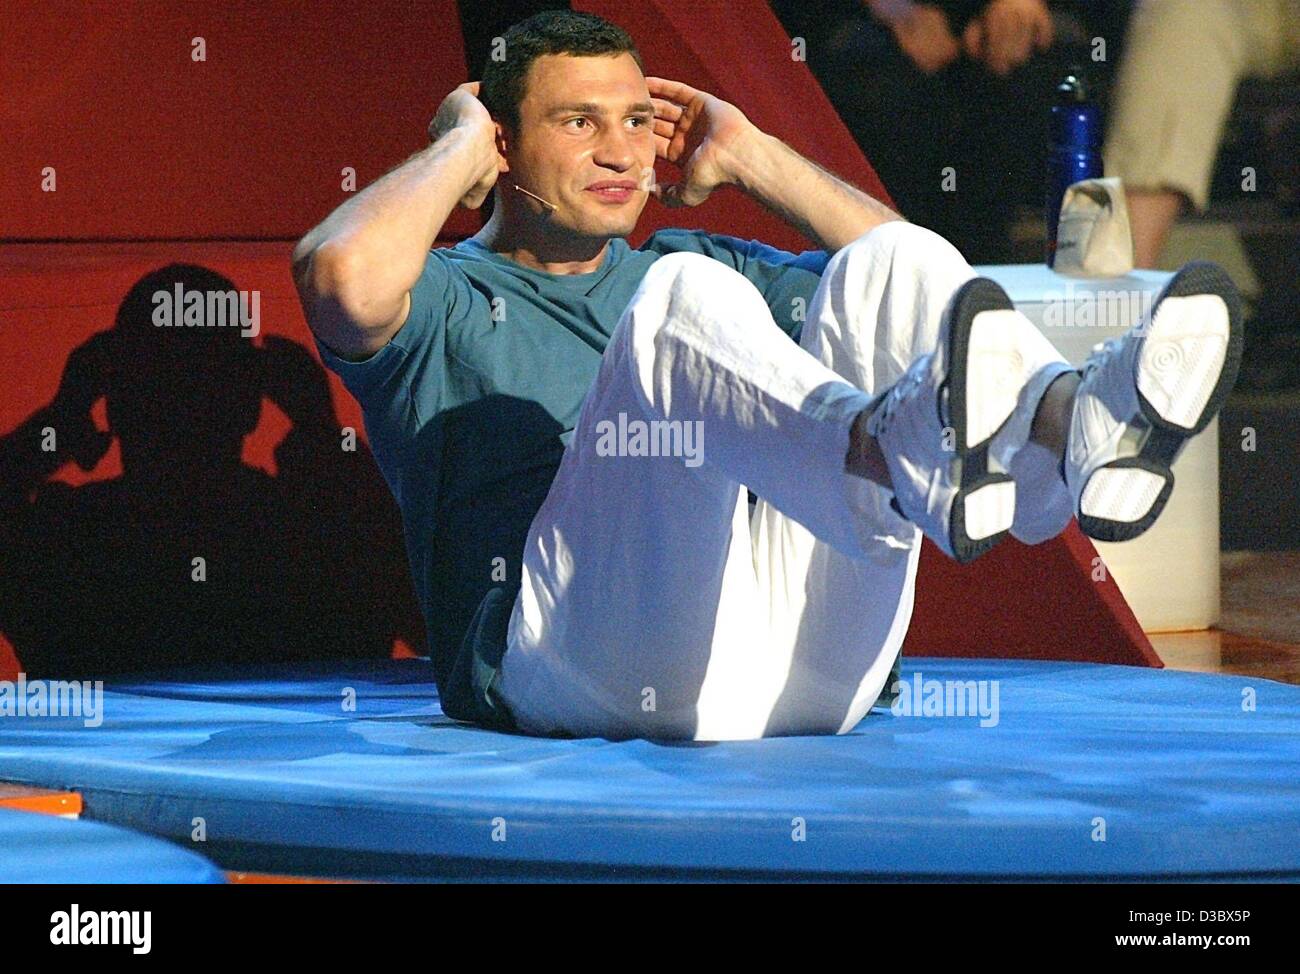 (Dpa) - ukrainische Boxer Vitali Klitschko macht Sit-ups während einer TV-Show in München, 16. August 2003. Stockfoto